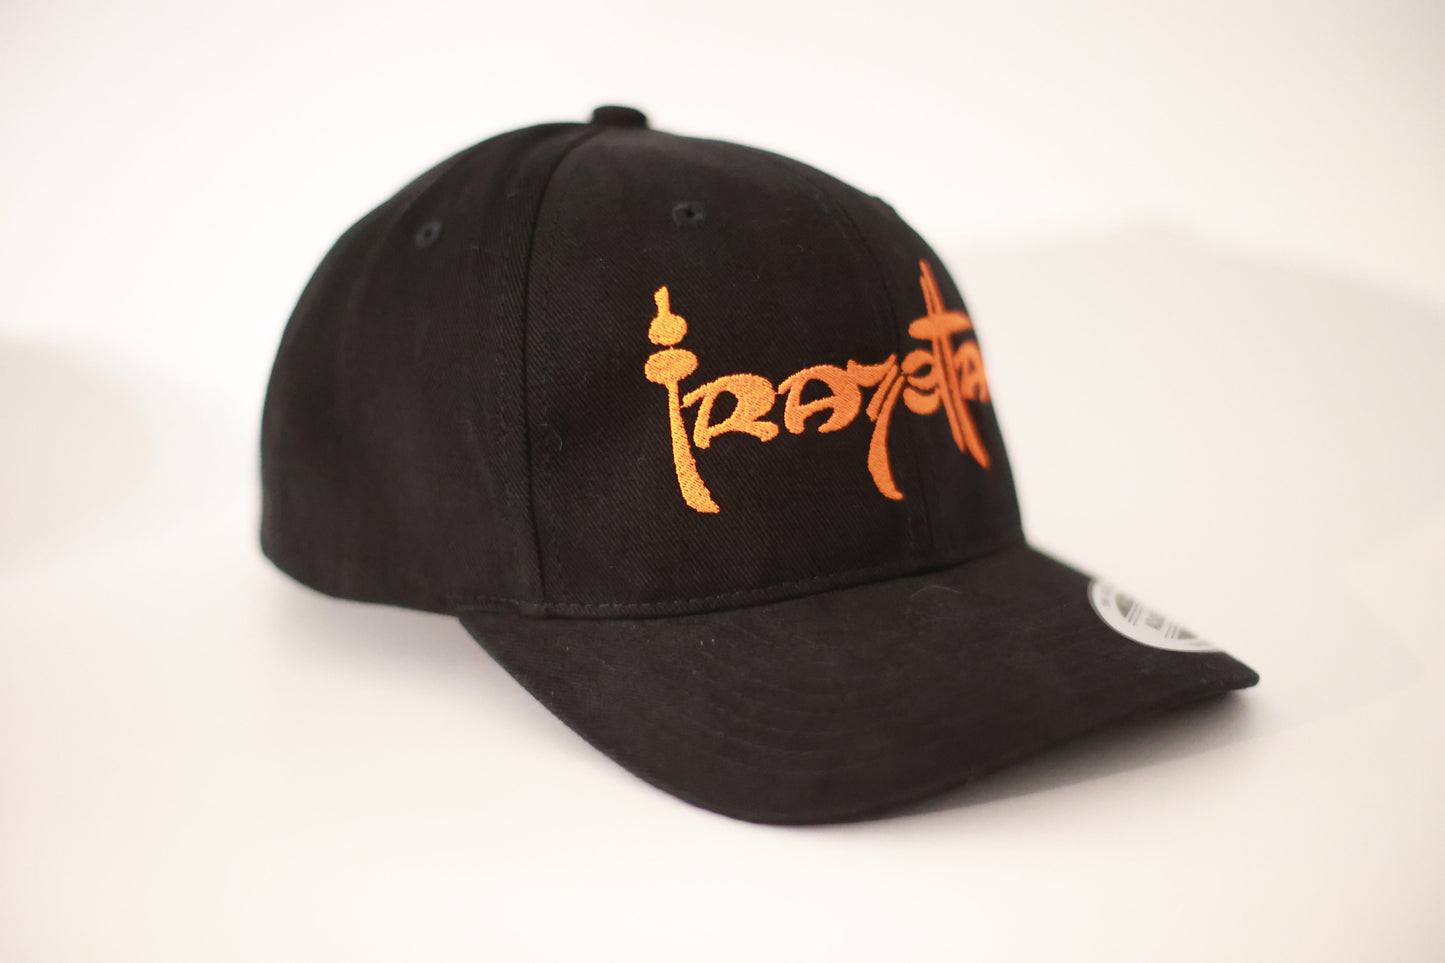 Frazetta Signature Hat Black With Orange